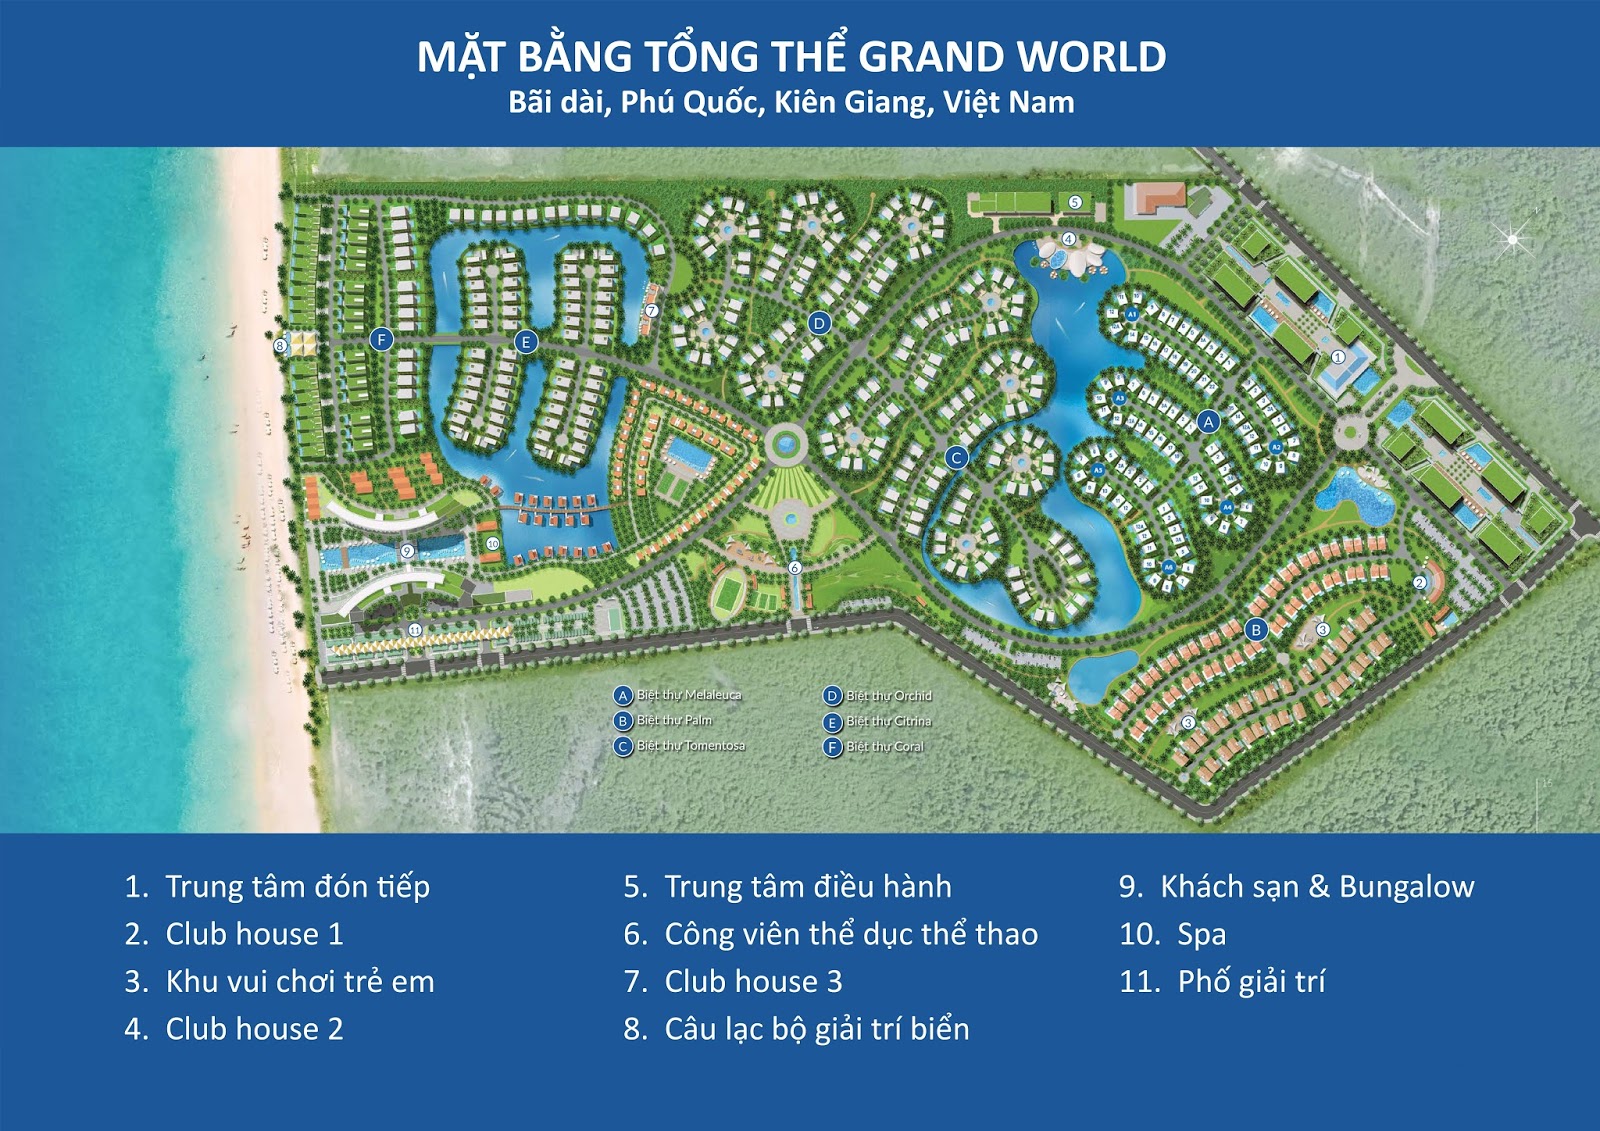 Grand World Phú Quốc là một trong những điểm đến tuyệt vời nhất tại Việt Nam. Với bản đồ của chúng tôi, bạn sẽ có thể khám phá khắp khu vực nghỉ dưỡng gồm khách sạn, nhà hàng, khu trò chơi và các sự kiện đặc biệt. Bắt đầu hành trình khám phá Grand World Phú Quốc với bản đồ của chúng tôi.